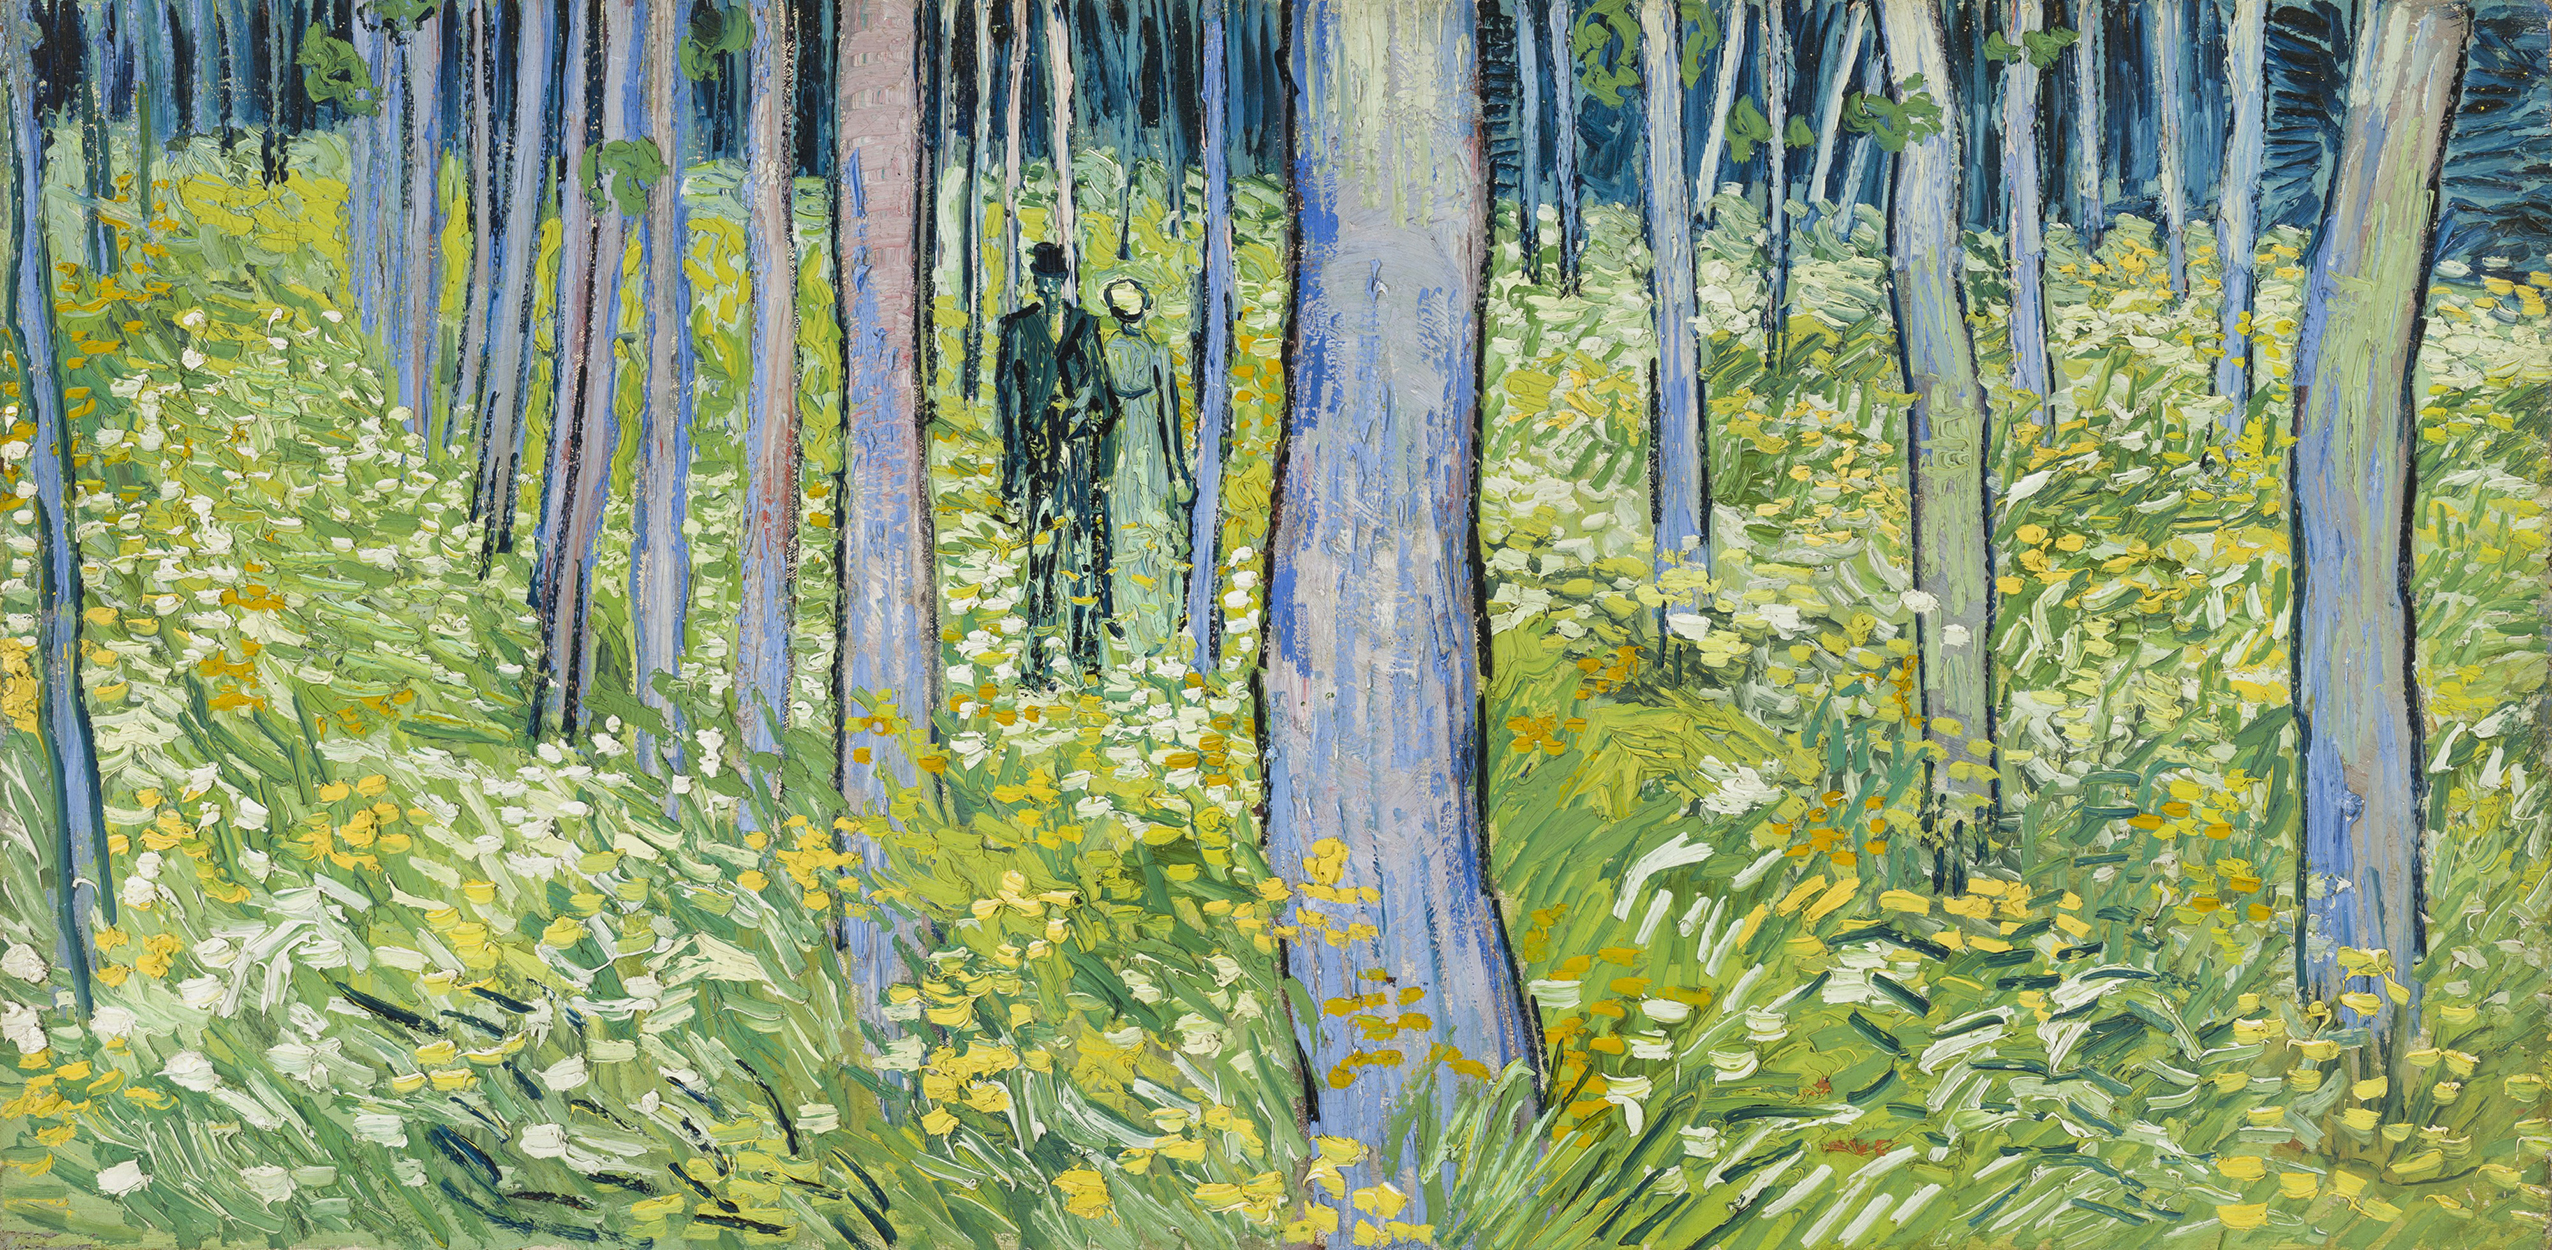 Ağaçların Arasında Yürüyen Çift (Undergrowth with Two Figures) by Vincent van Gogh - 1890 - 49.5 x 99.7cm 